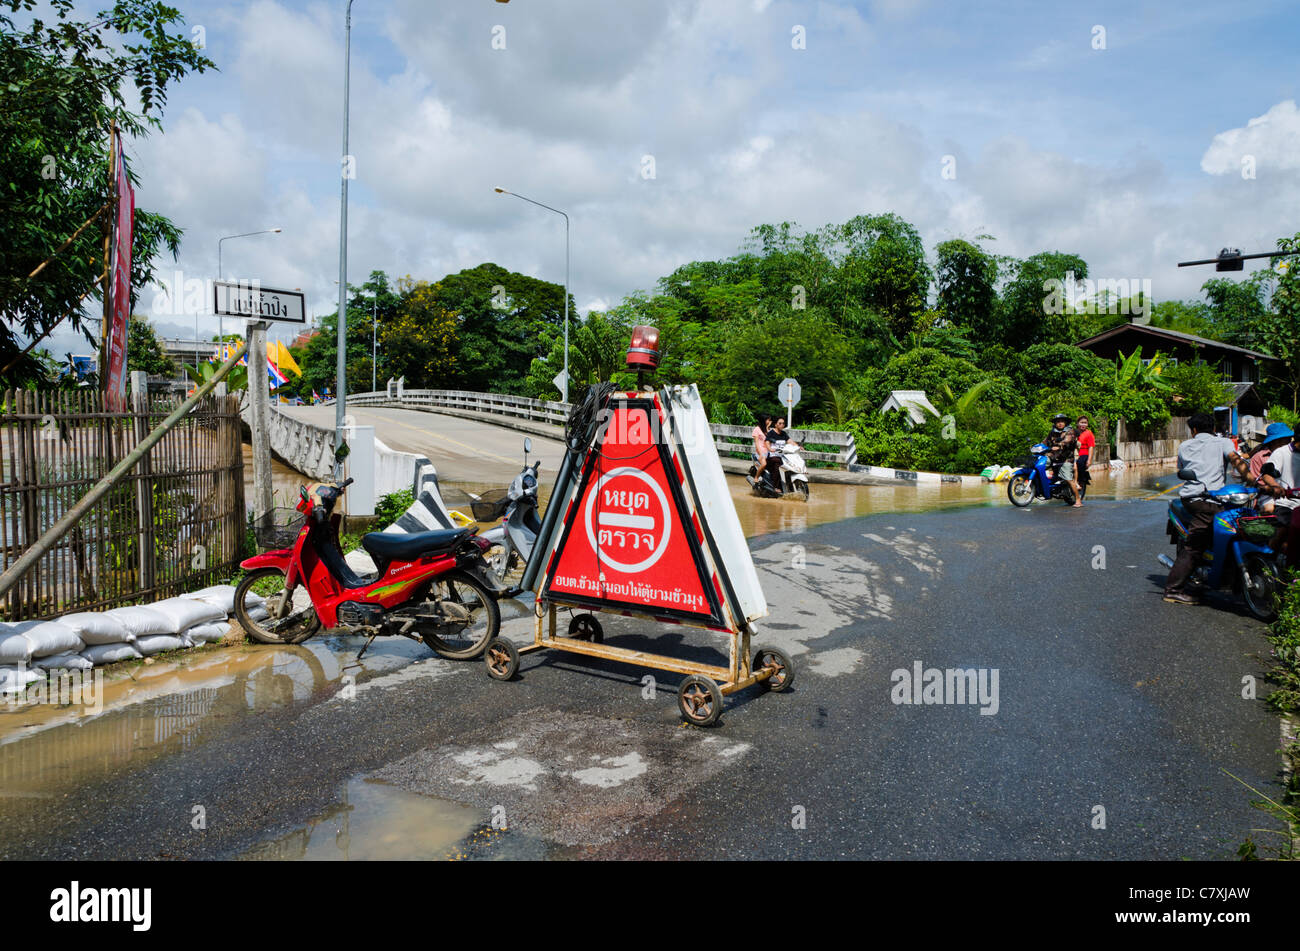 Triangle rouge grand panneau d'avertissement dans la langue thaï sur route à l'intersection du pont inondé par la rivière Ping dans le nord de la Thaïlande Banque D'Images